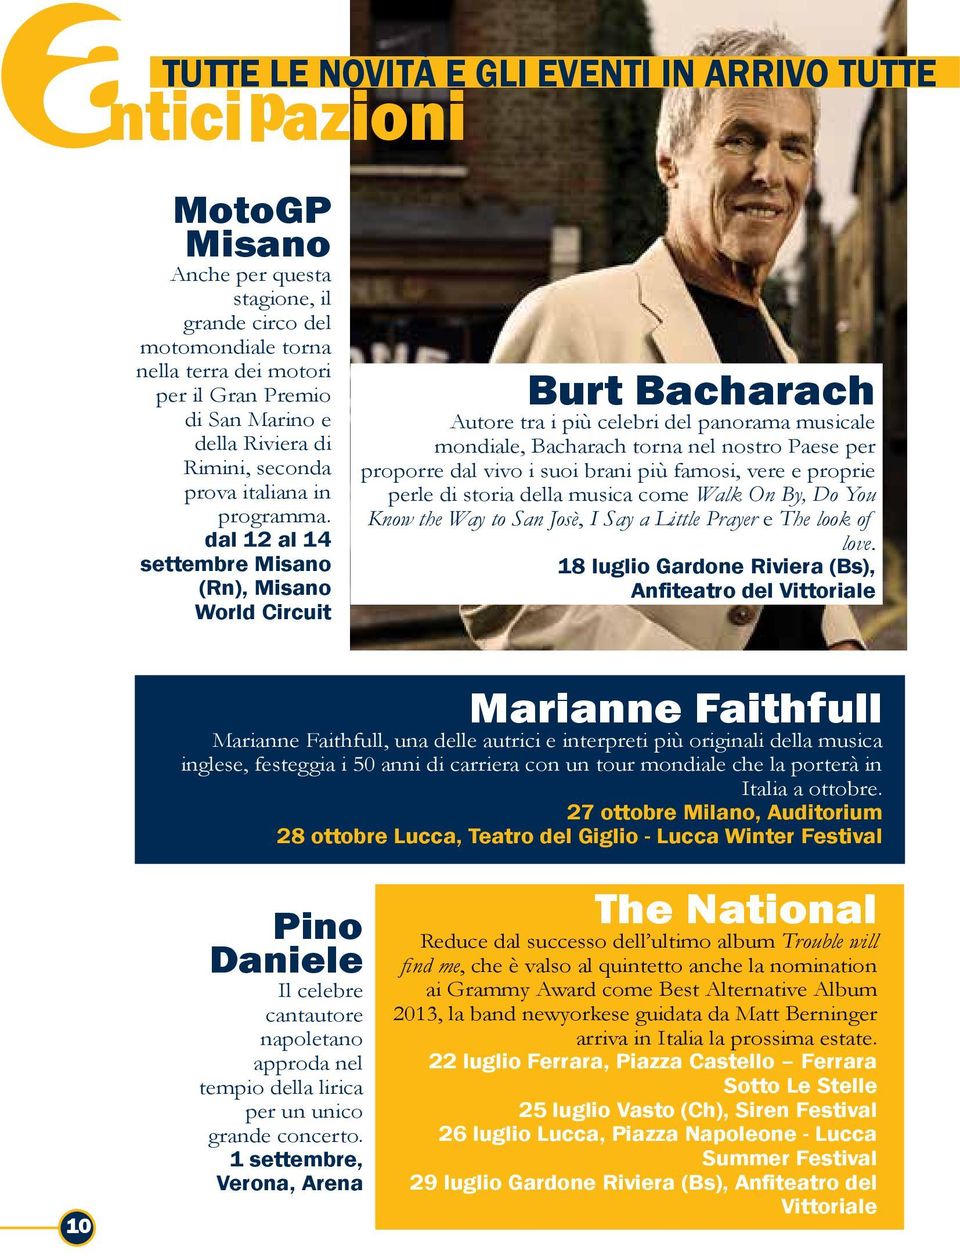 dal 12 al 14 settembre Misano (Rn), Misano World Circuit Burt Bacharach Autore tra i più celebri del panorama musicale mondiale, Bacharach torna nel nostro Paese per proporre dal vivo i suoi brani